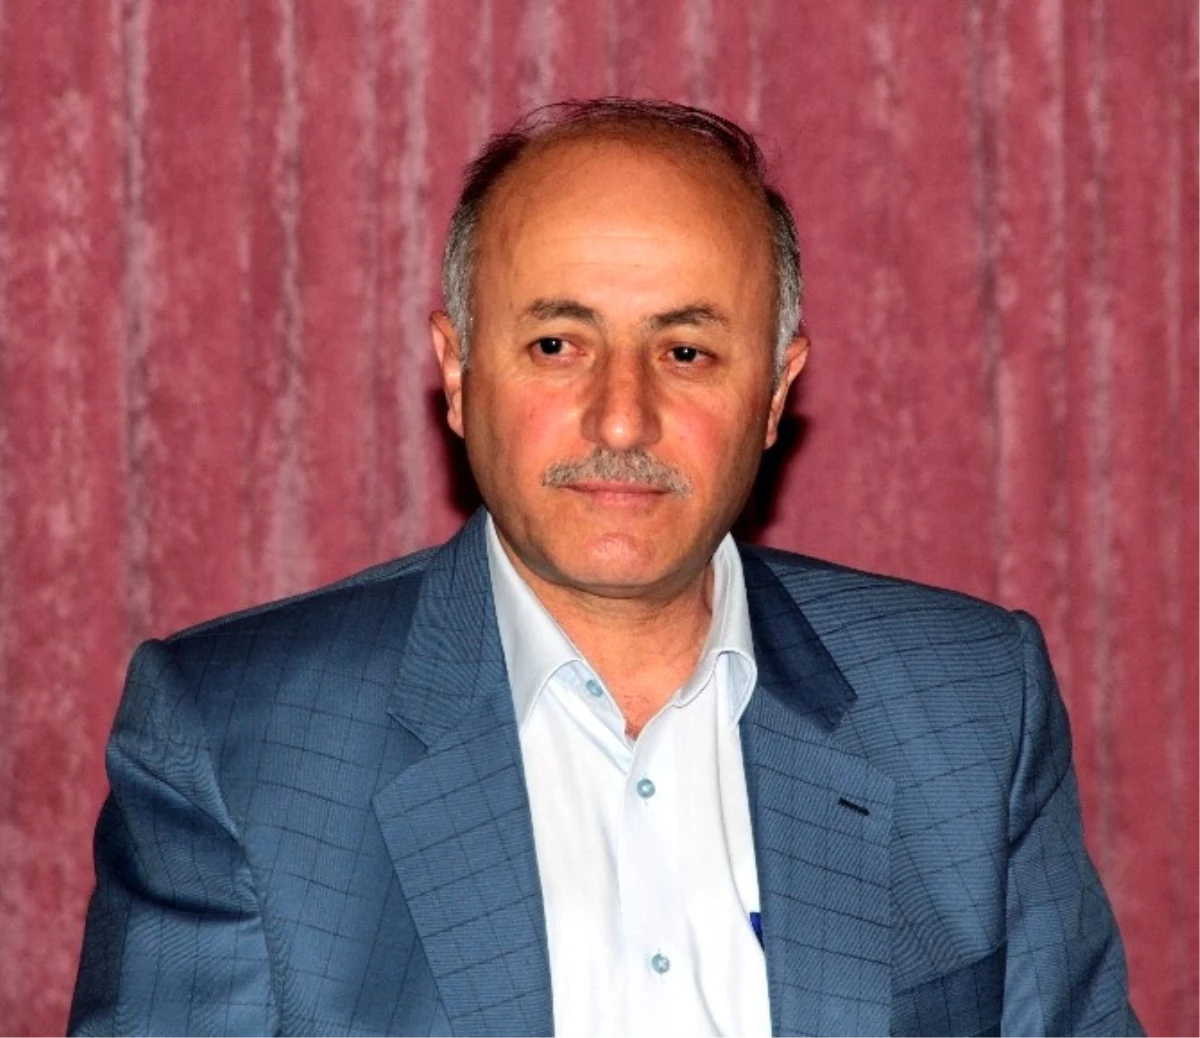 Erzurum Valisi Azizoğlu, 15 Temmuz Gecesini Anlattı Açıklaması